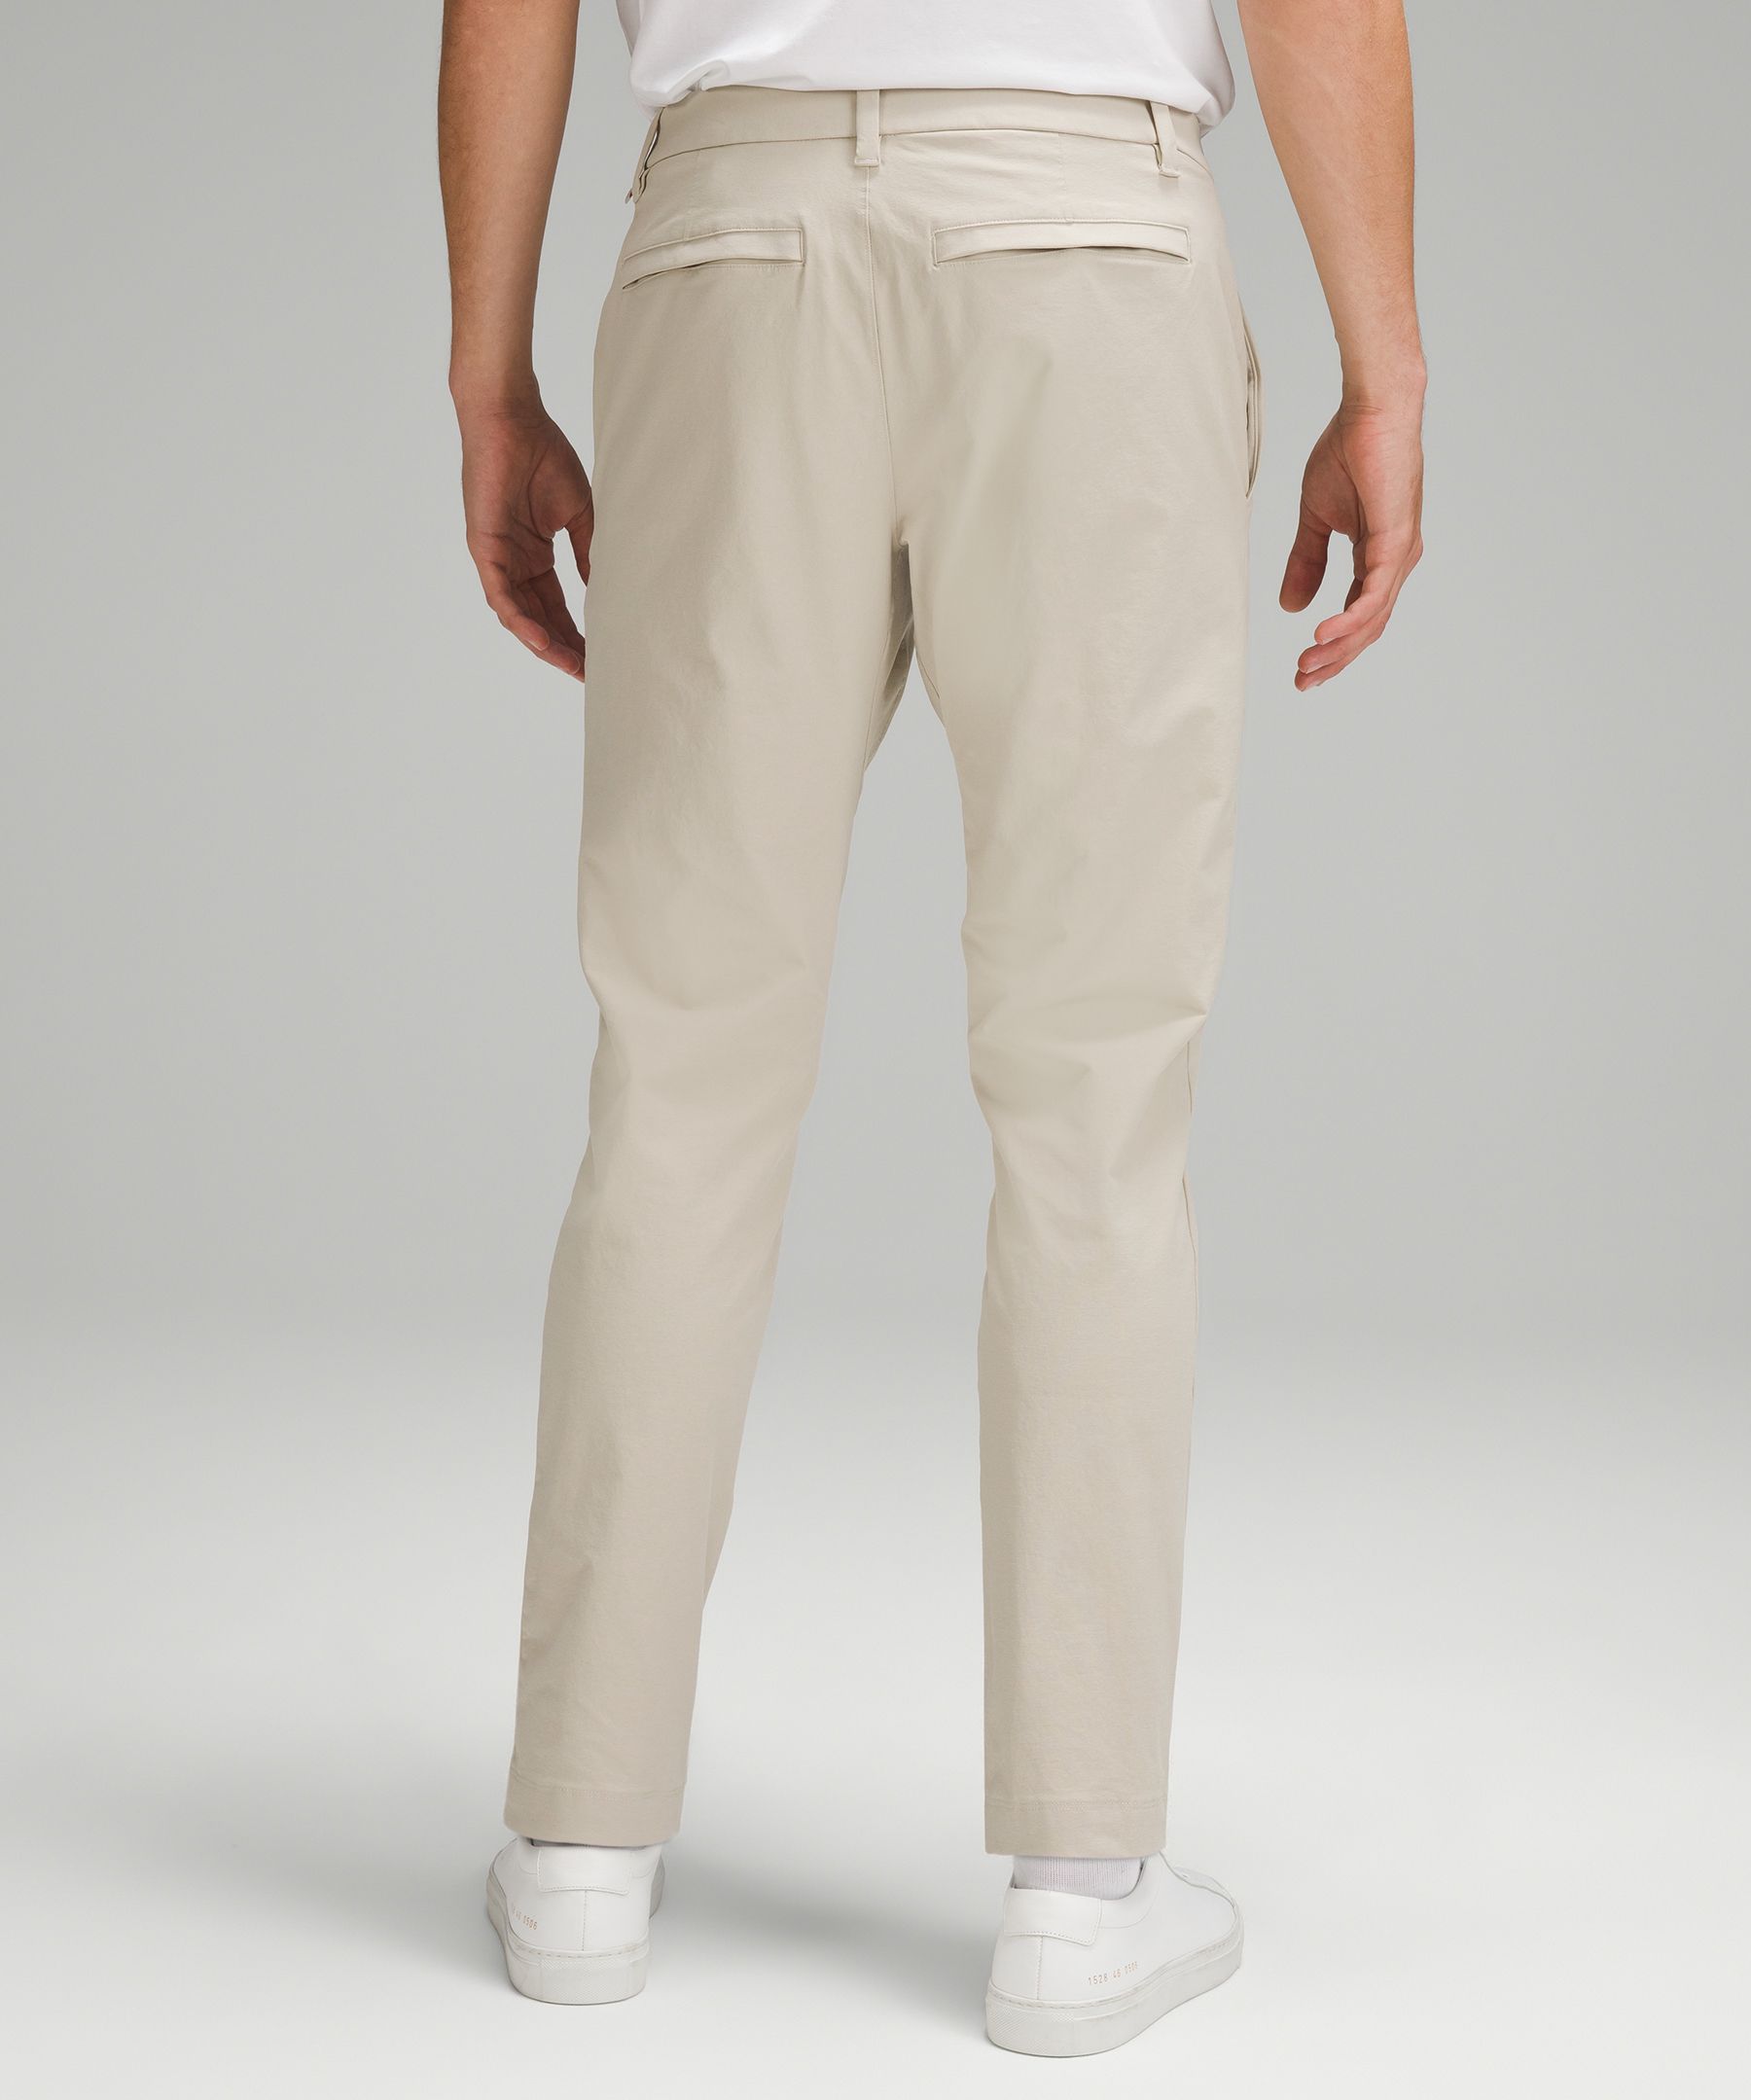 Shop Lululemon Abc Slim-fit Trousers 30"l Stretch Cotton Versatwill